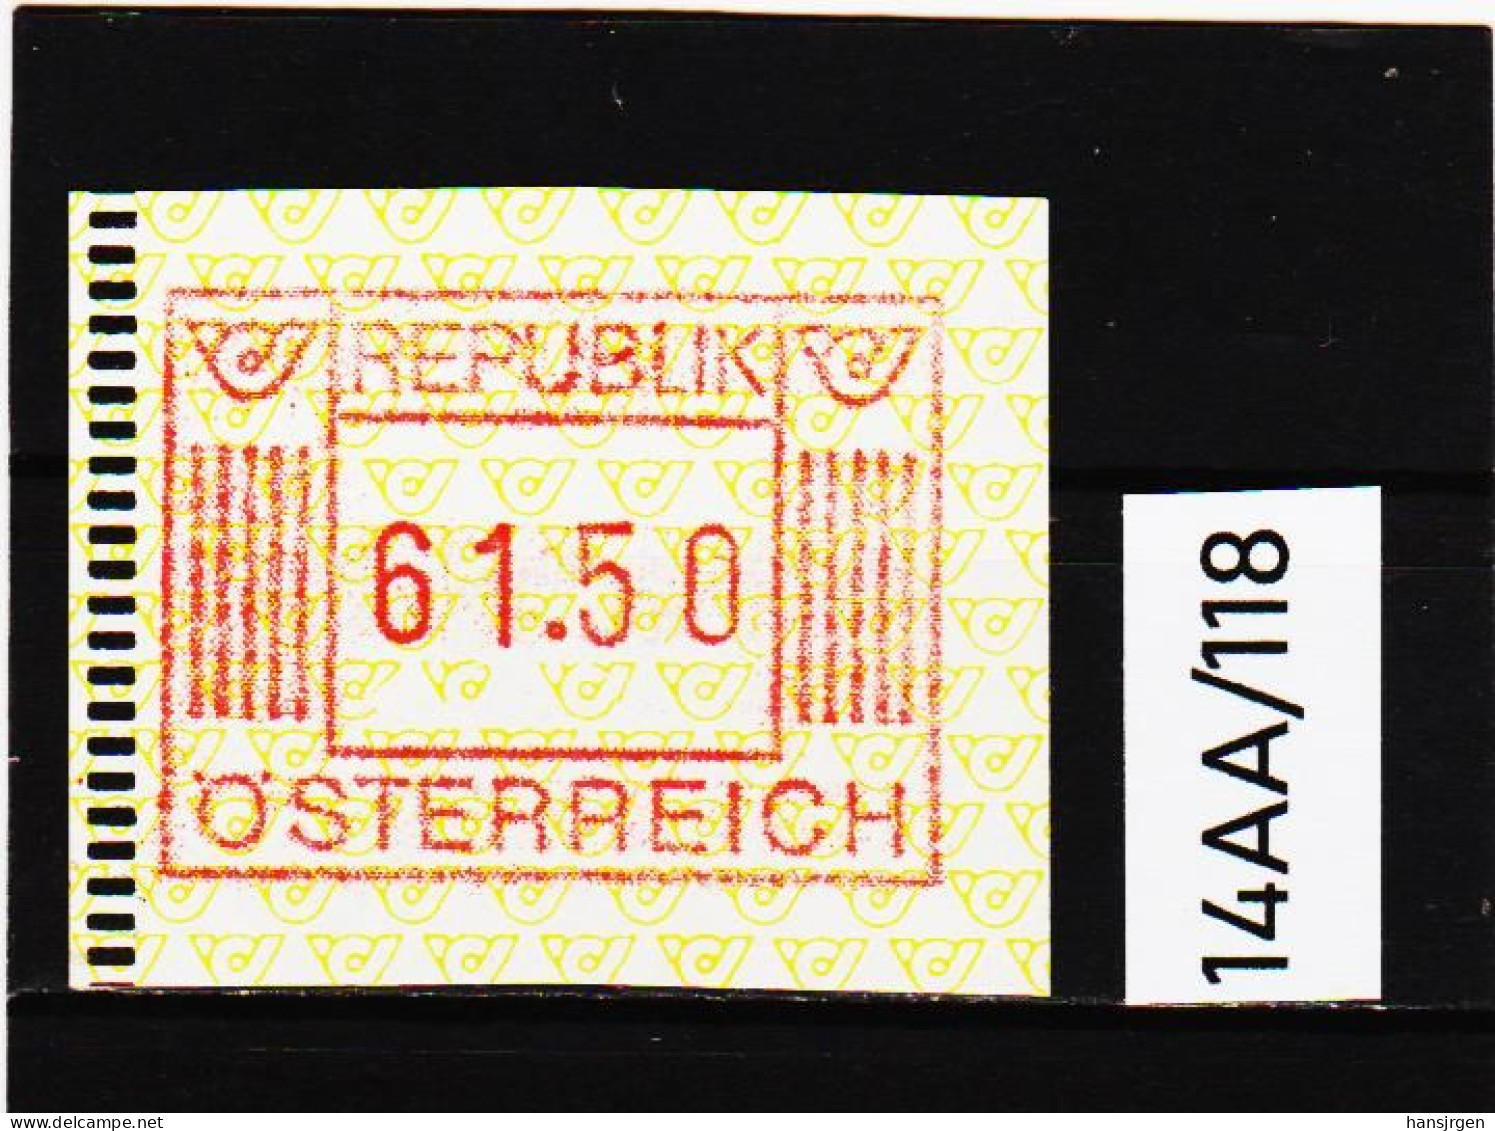 14AA/118  ÖSTERREICH 1983 AUTOMATENMARKEN  A N K  1. AUSGABE  61,50 SCHILLING   ** Postfrisch - Machine Labels [ATM]